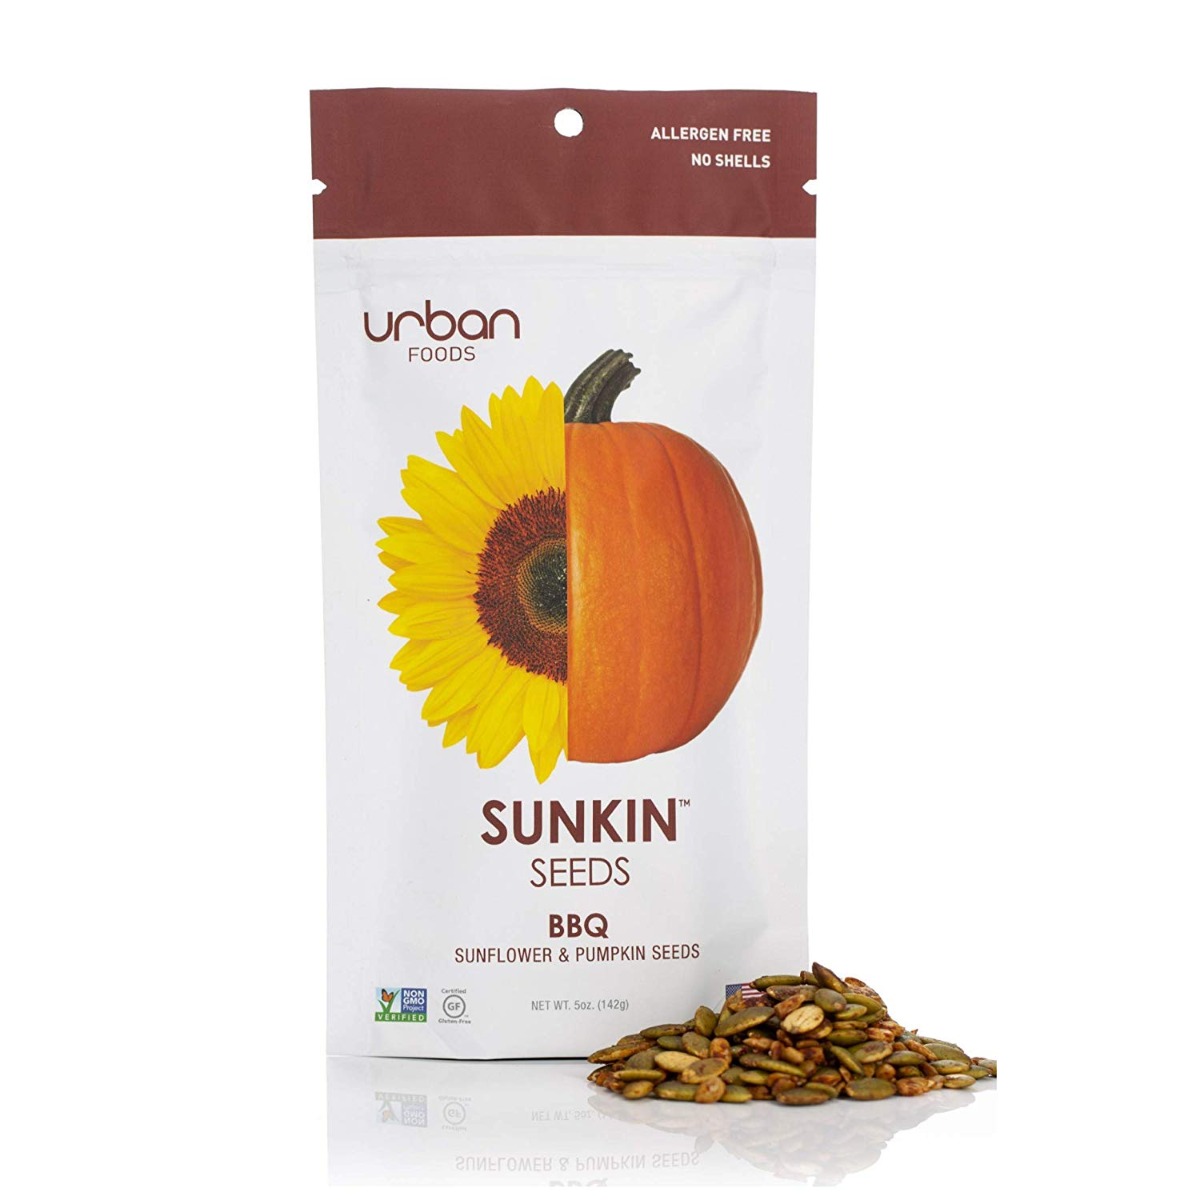 URBAN FOODS: BBQ Sunflower & Pumpkin Seeds, 5 oz - 0867084000407